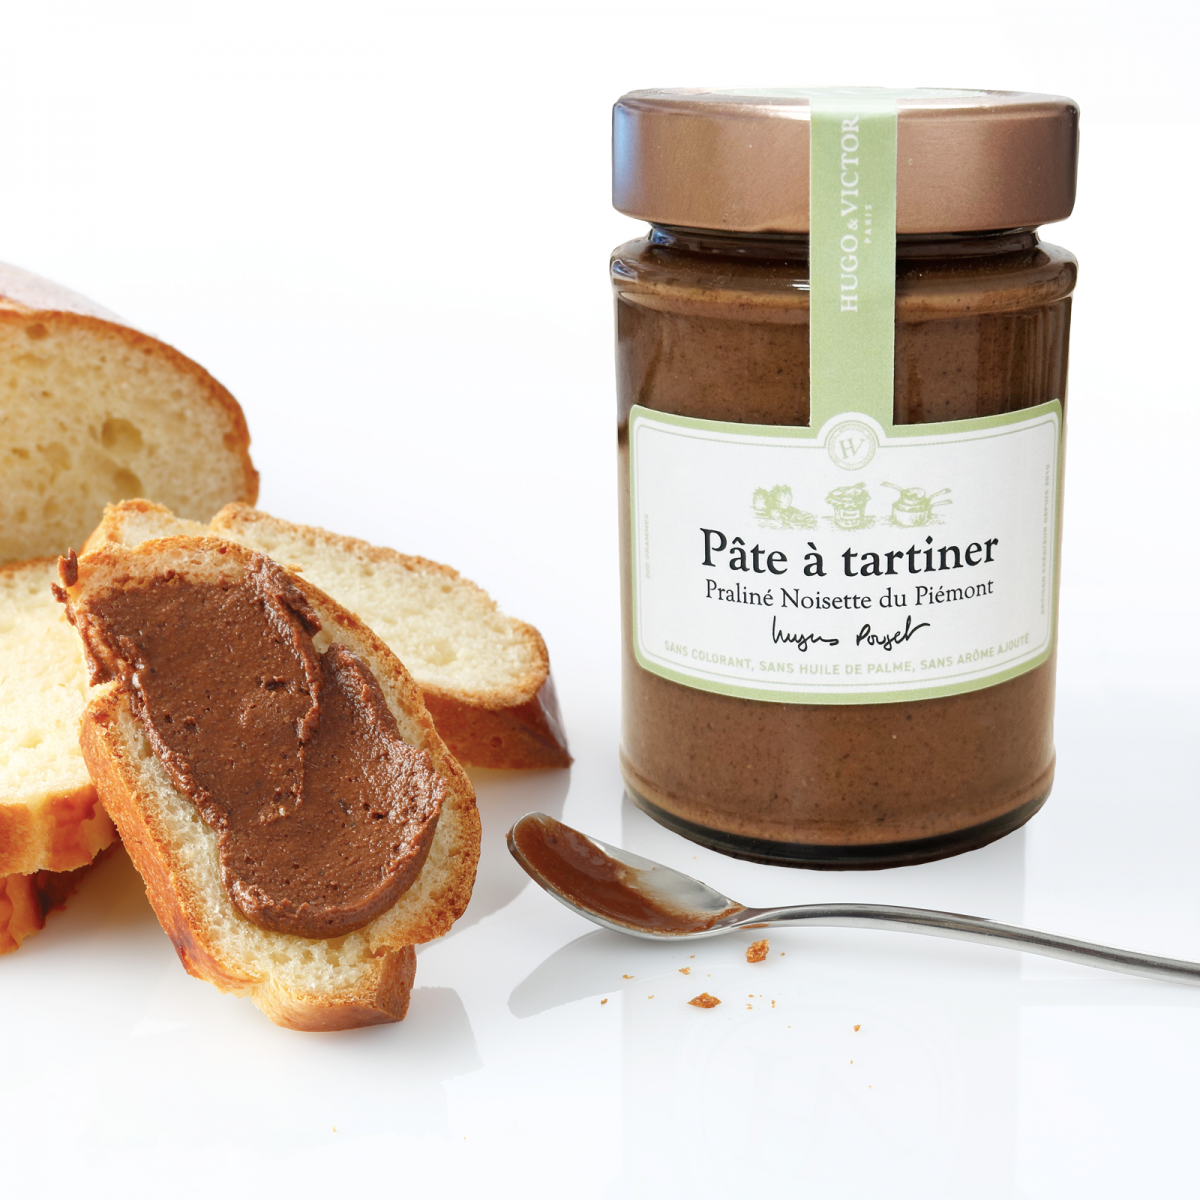 Pâte à tartiner Praliné Noisette - Pâtissier Chocolatier de Luxe - Paris